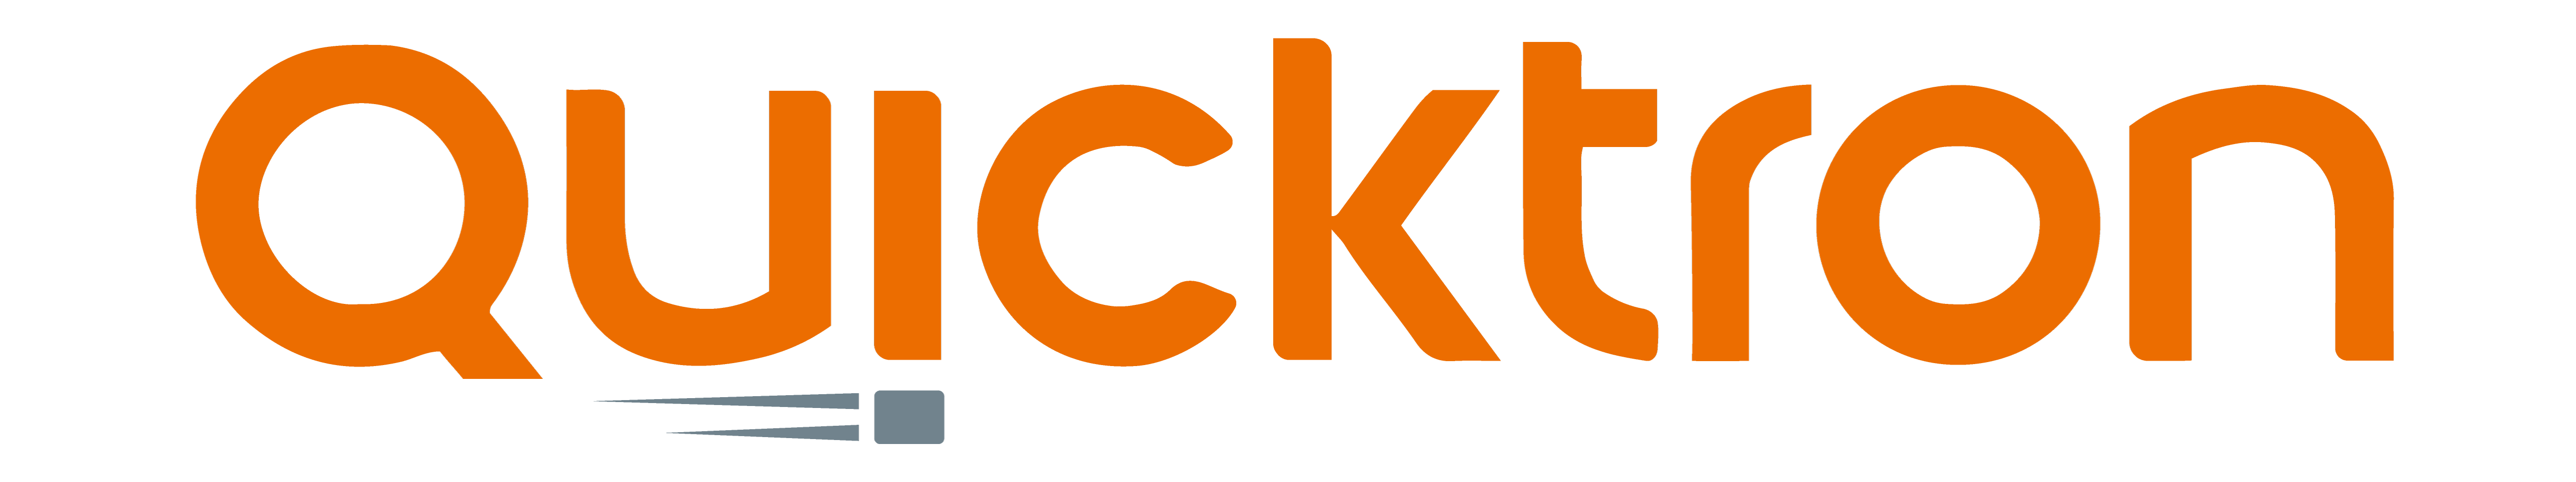 Quicktron logo